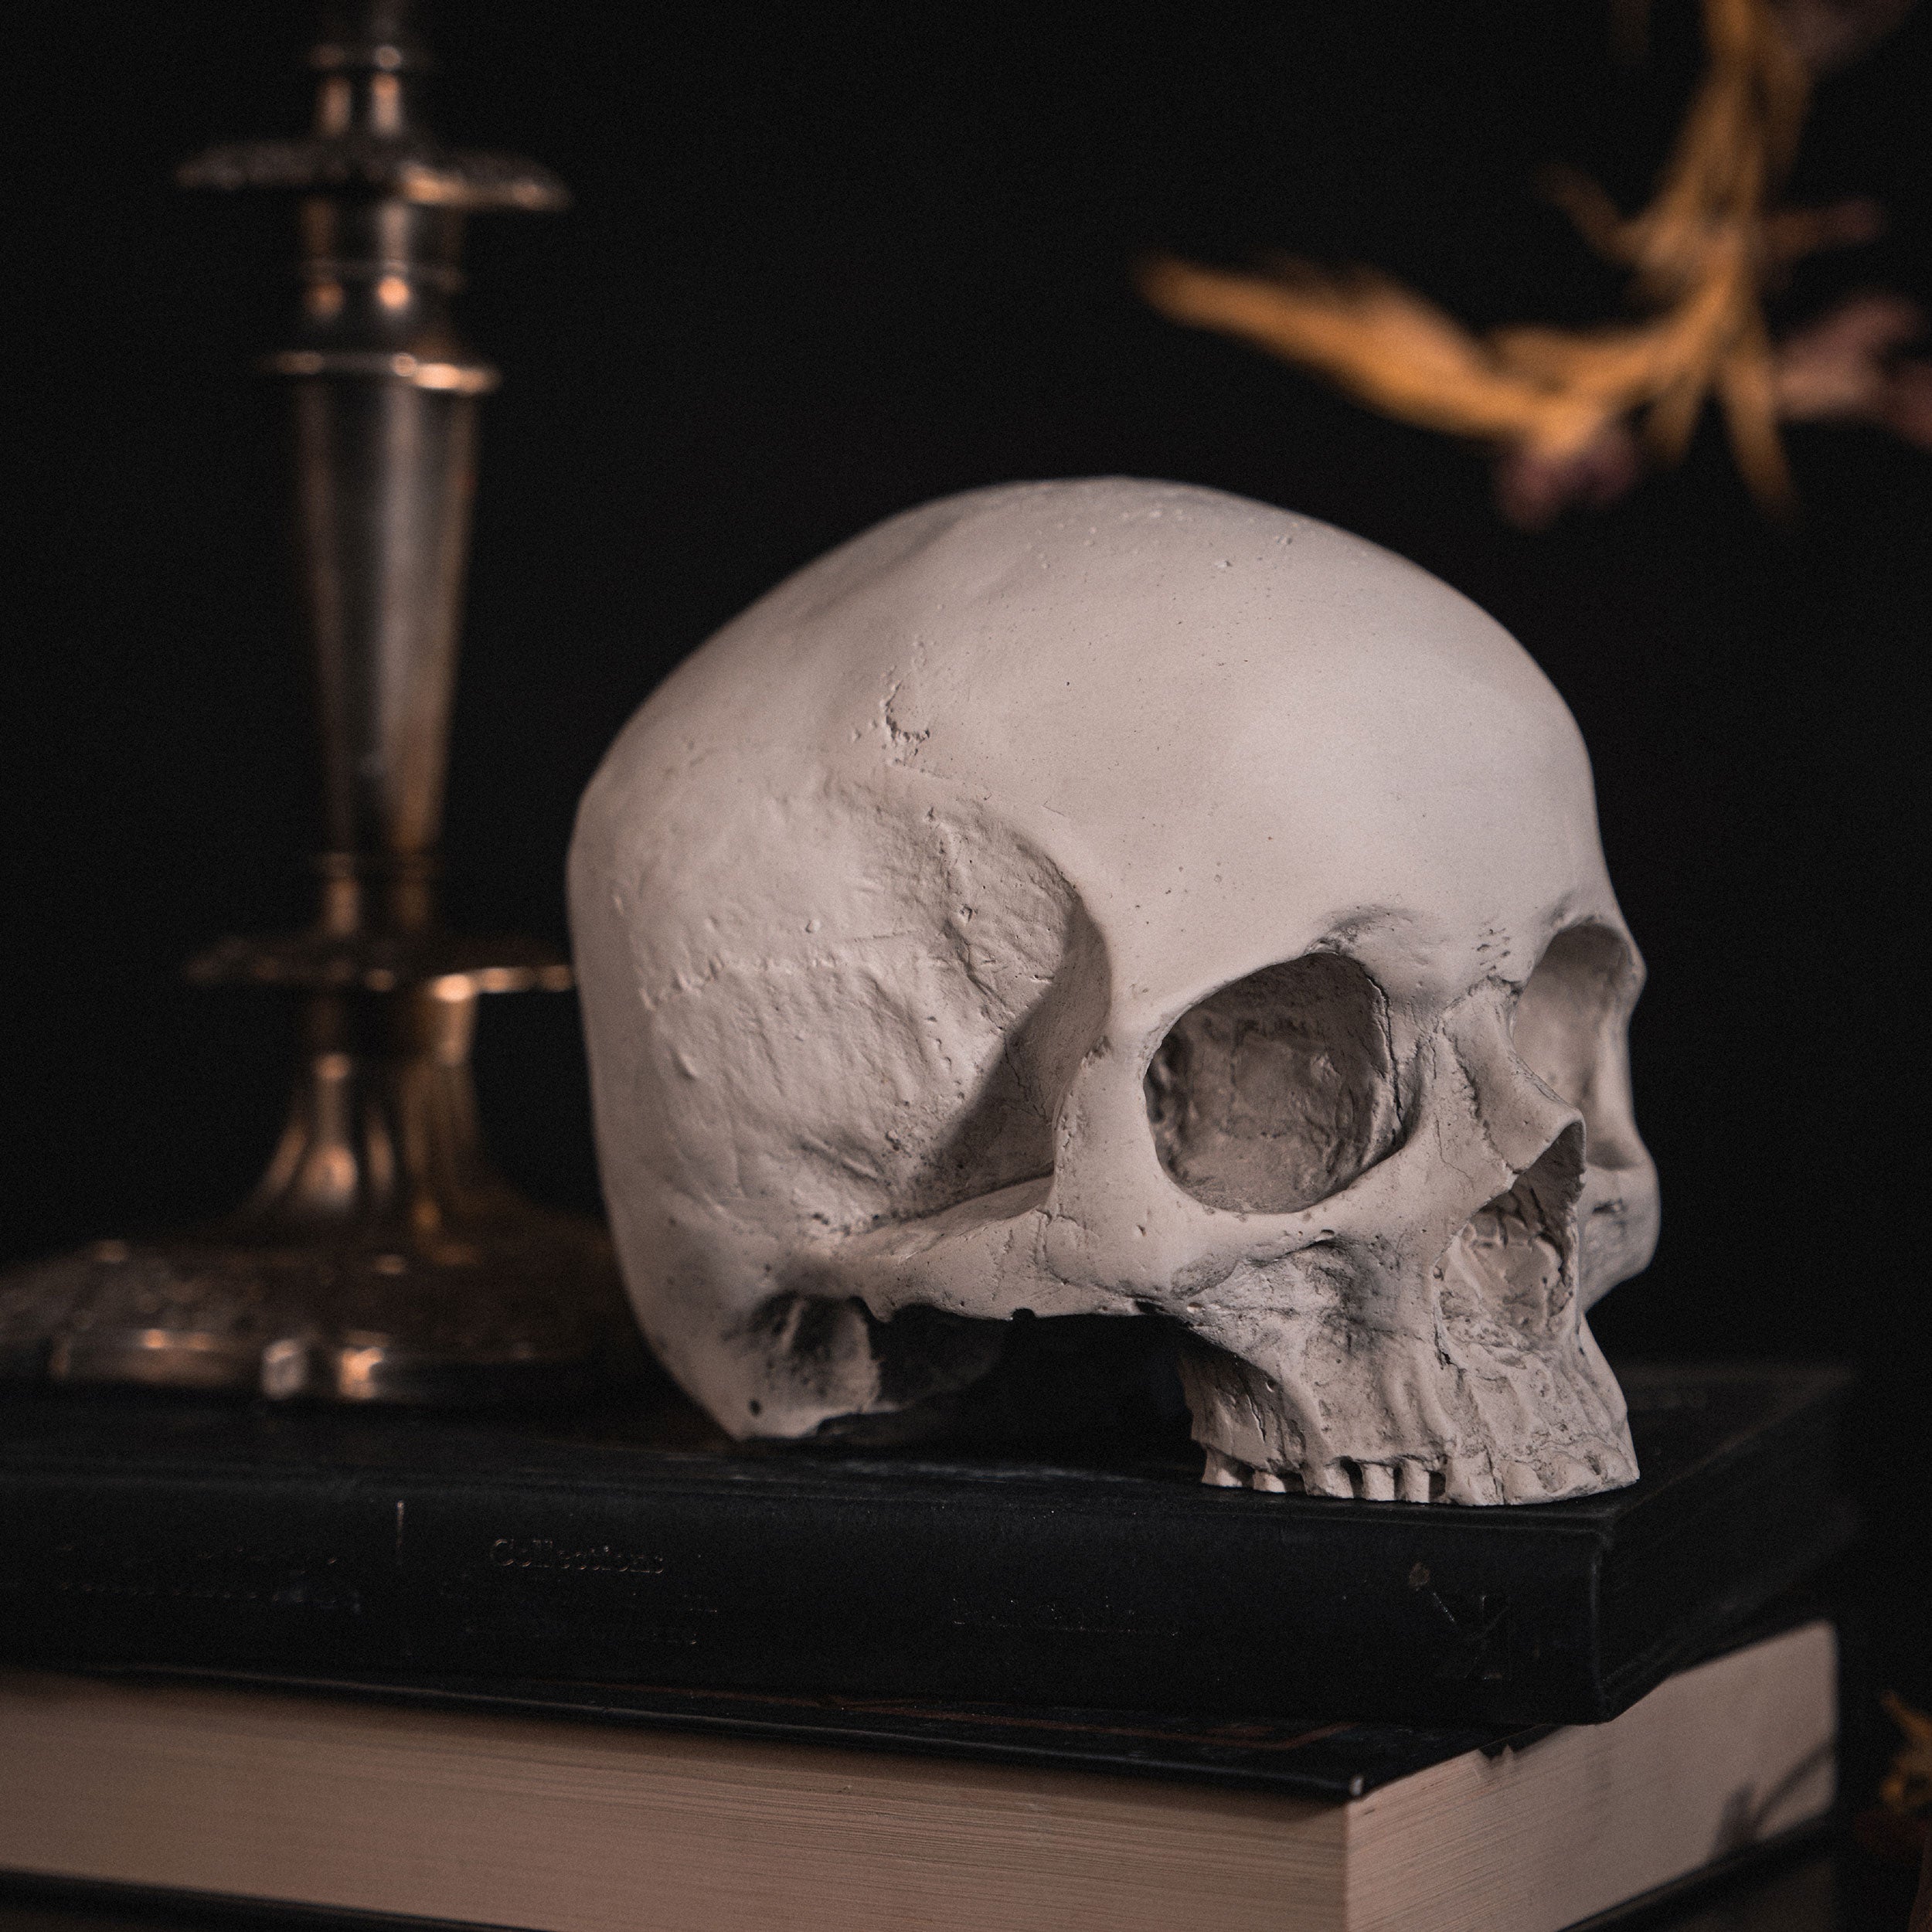 skull of j.doe skull ornament - the blackened teeth - gothic home decor 